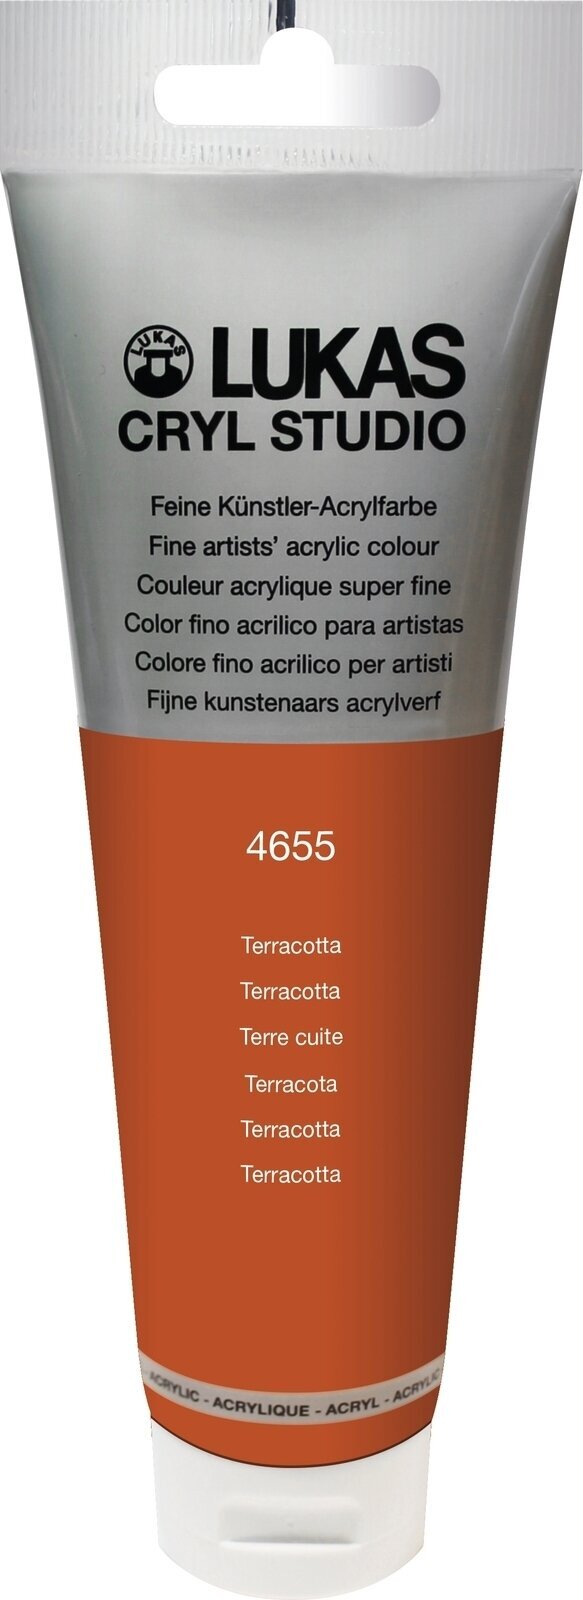 Culoare acrilică Lukas Cryl Studio Acrylic Paint Plastic Tube Vopsea acrilică Terracotta 125 ml 1 buc